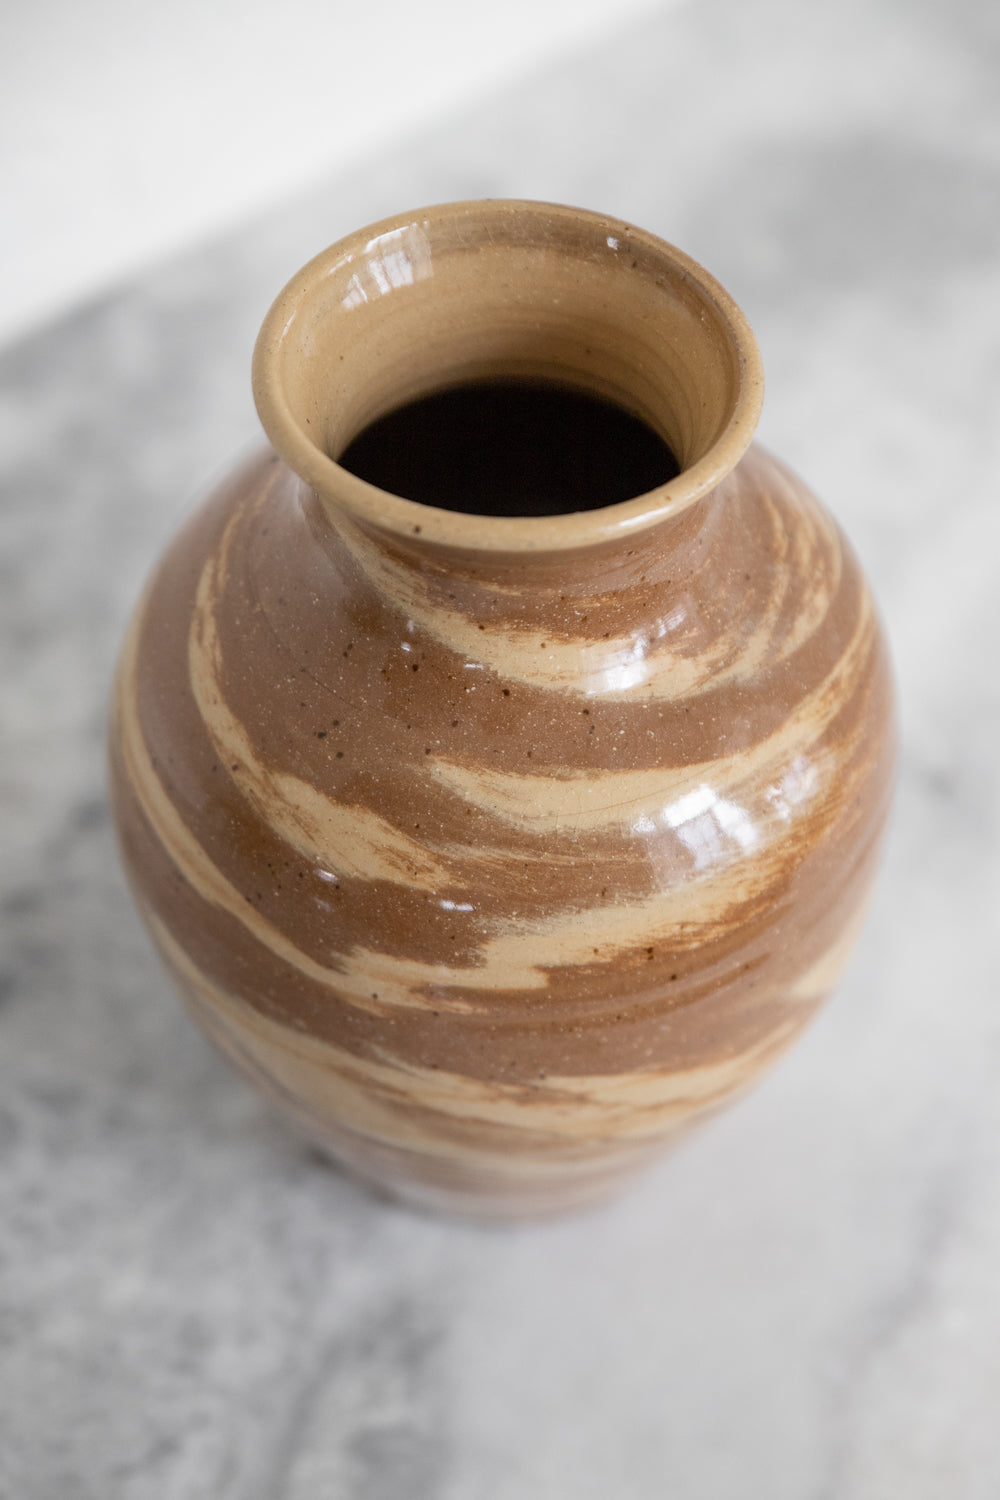 Desert Vase